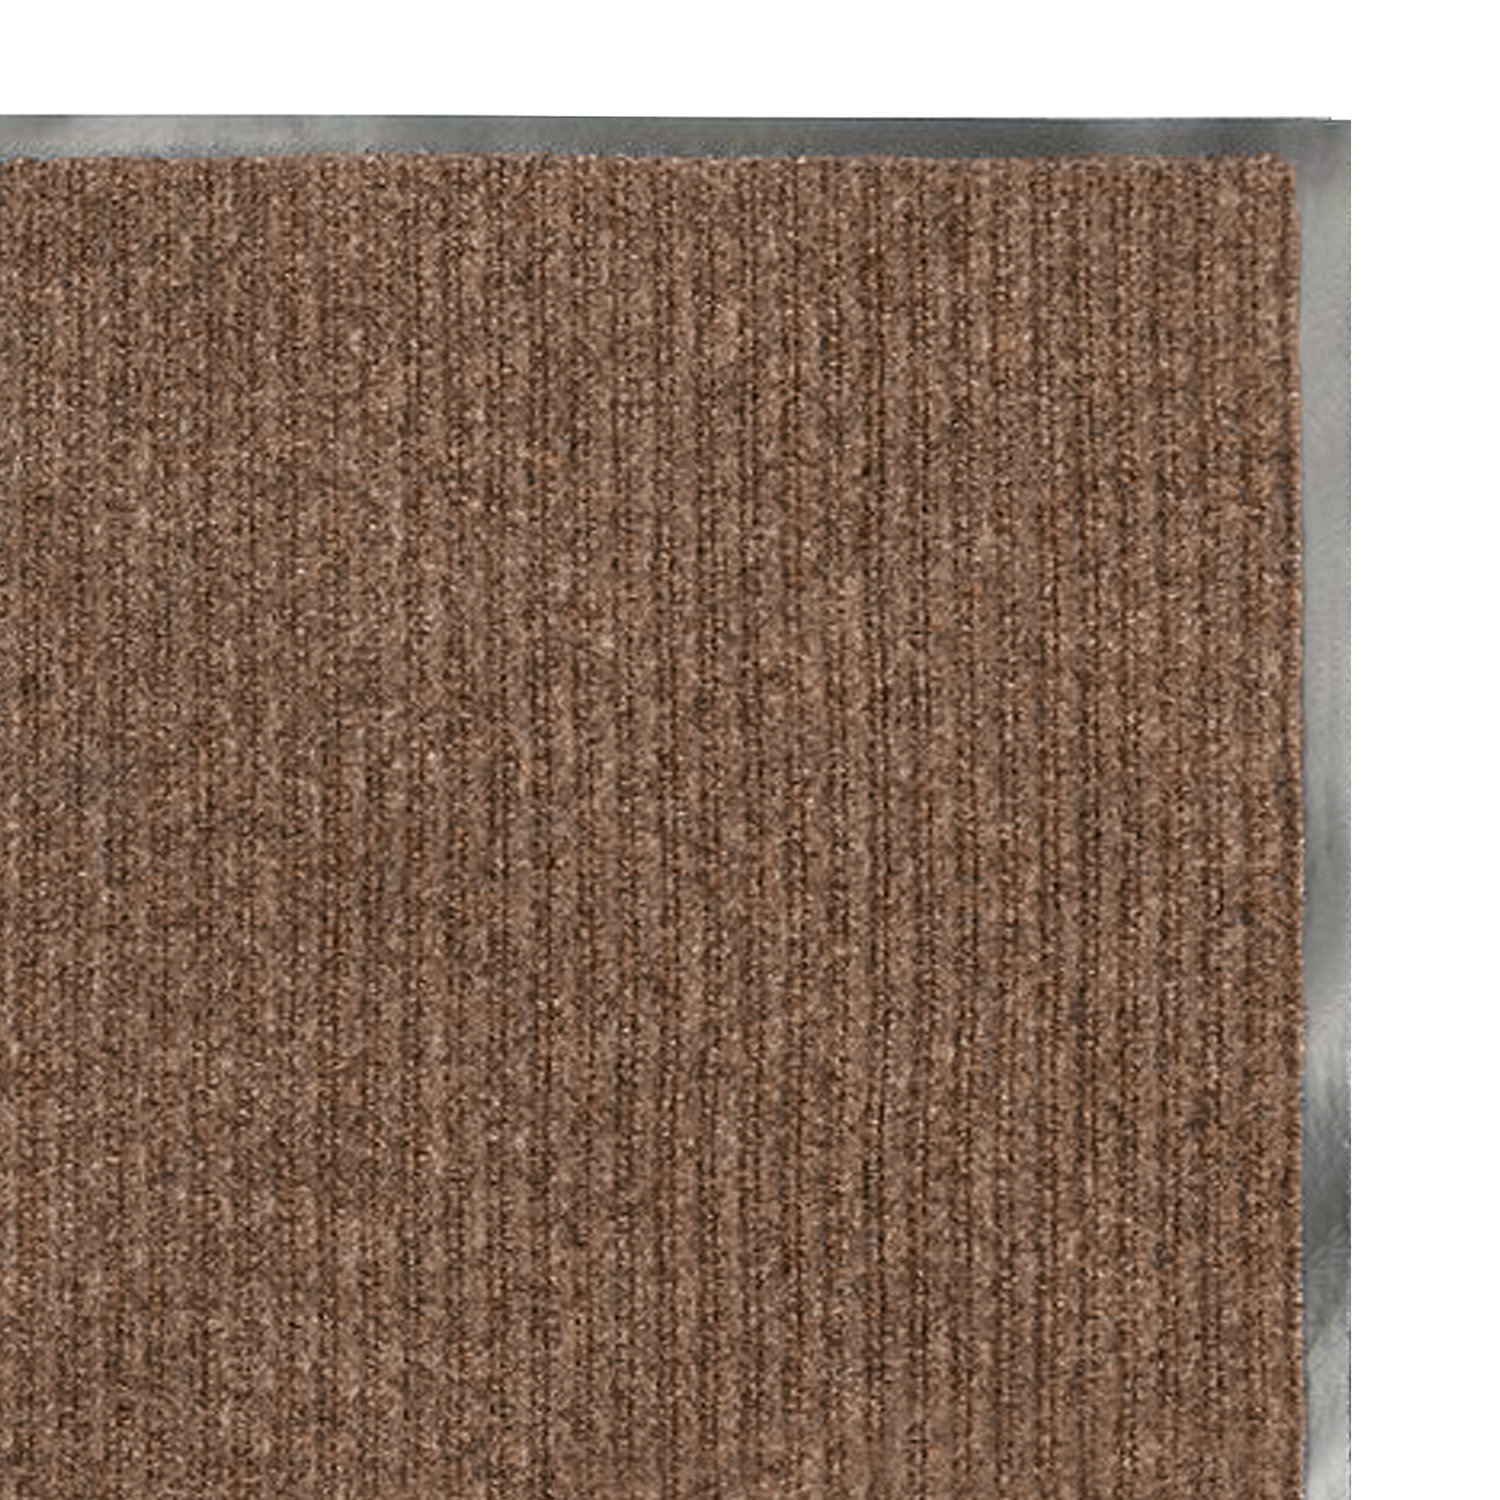  входной ворсовый влаго-грязезащитный ЛАЙМА/ЛЮБАША, 40×60 см .